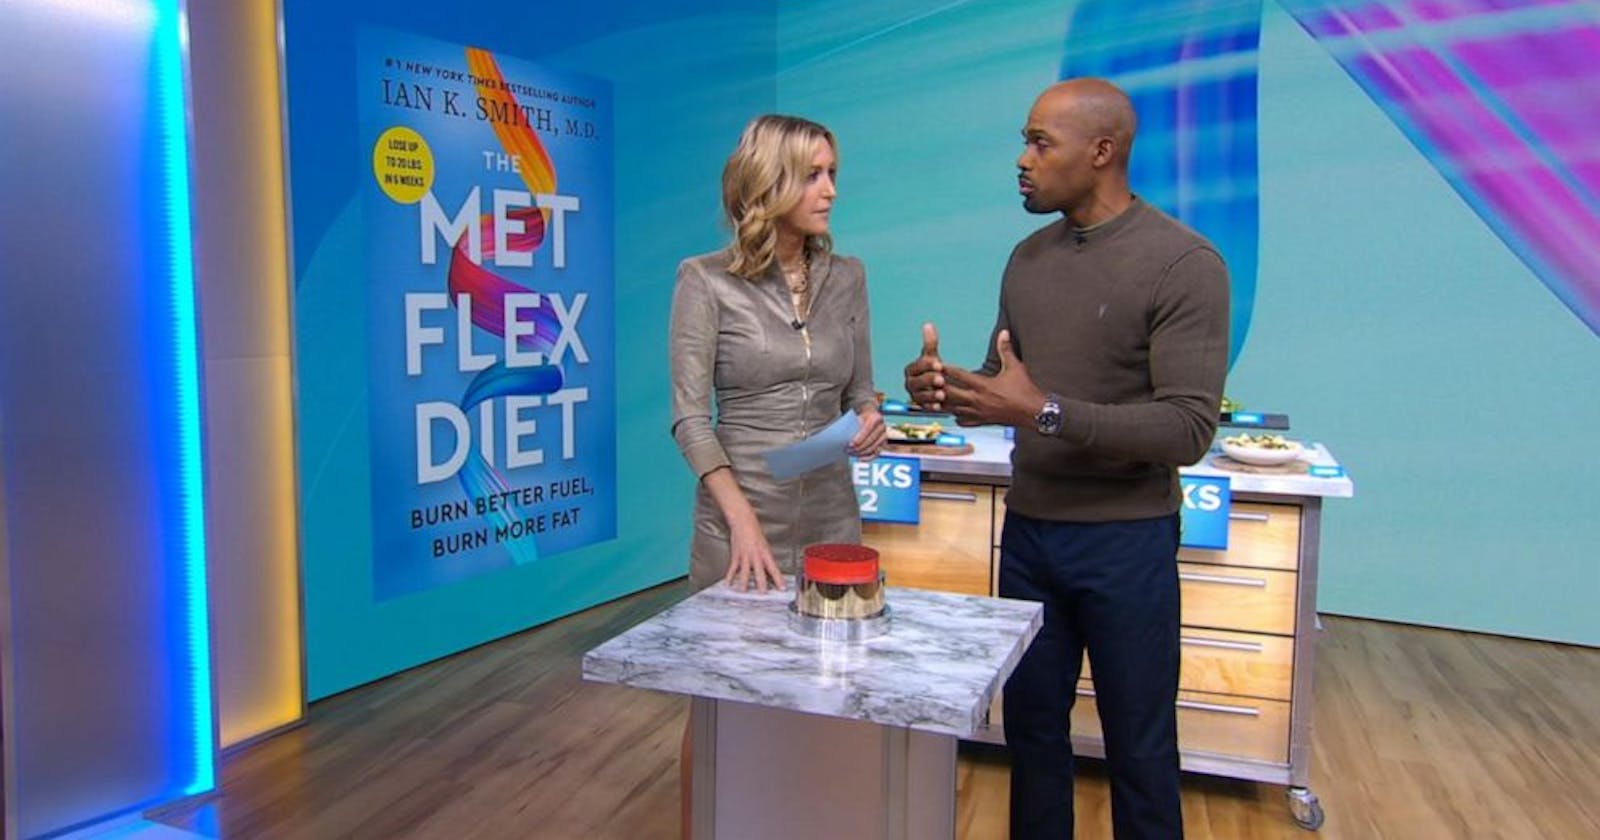 Met Flex Diet Reviews: Is It Legit or Scam?